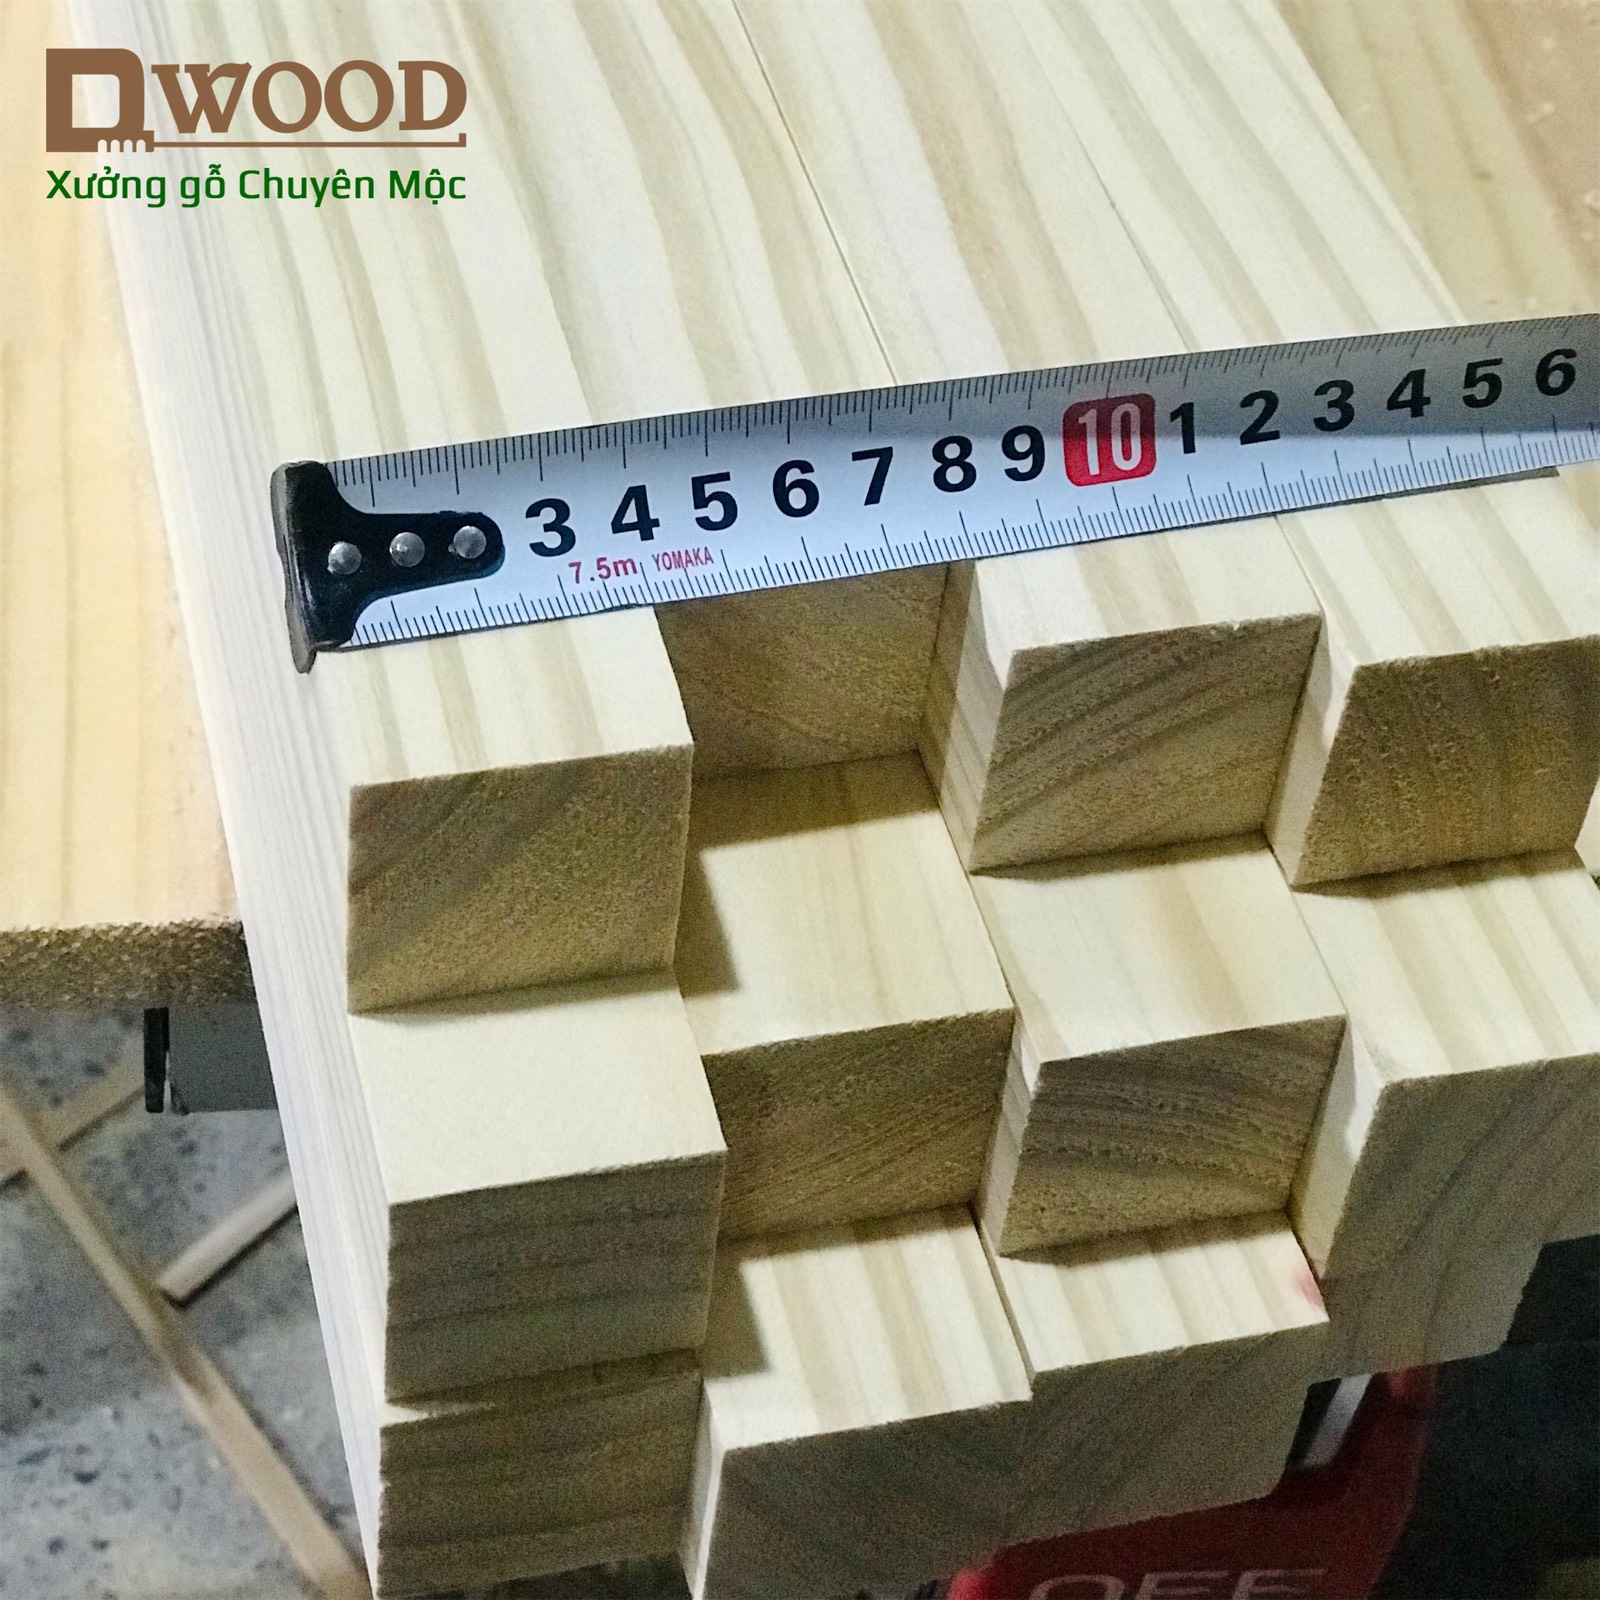 Thanh gỗ thông Dwood vuông 4x4 đã xử lý các mặt đẹp